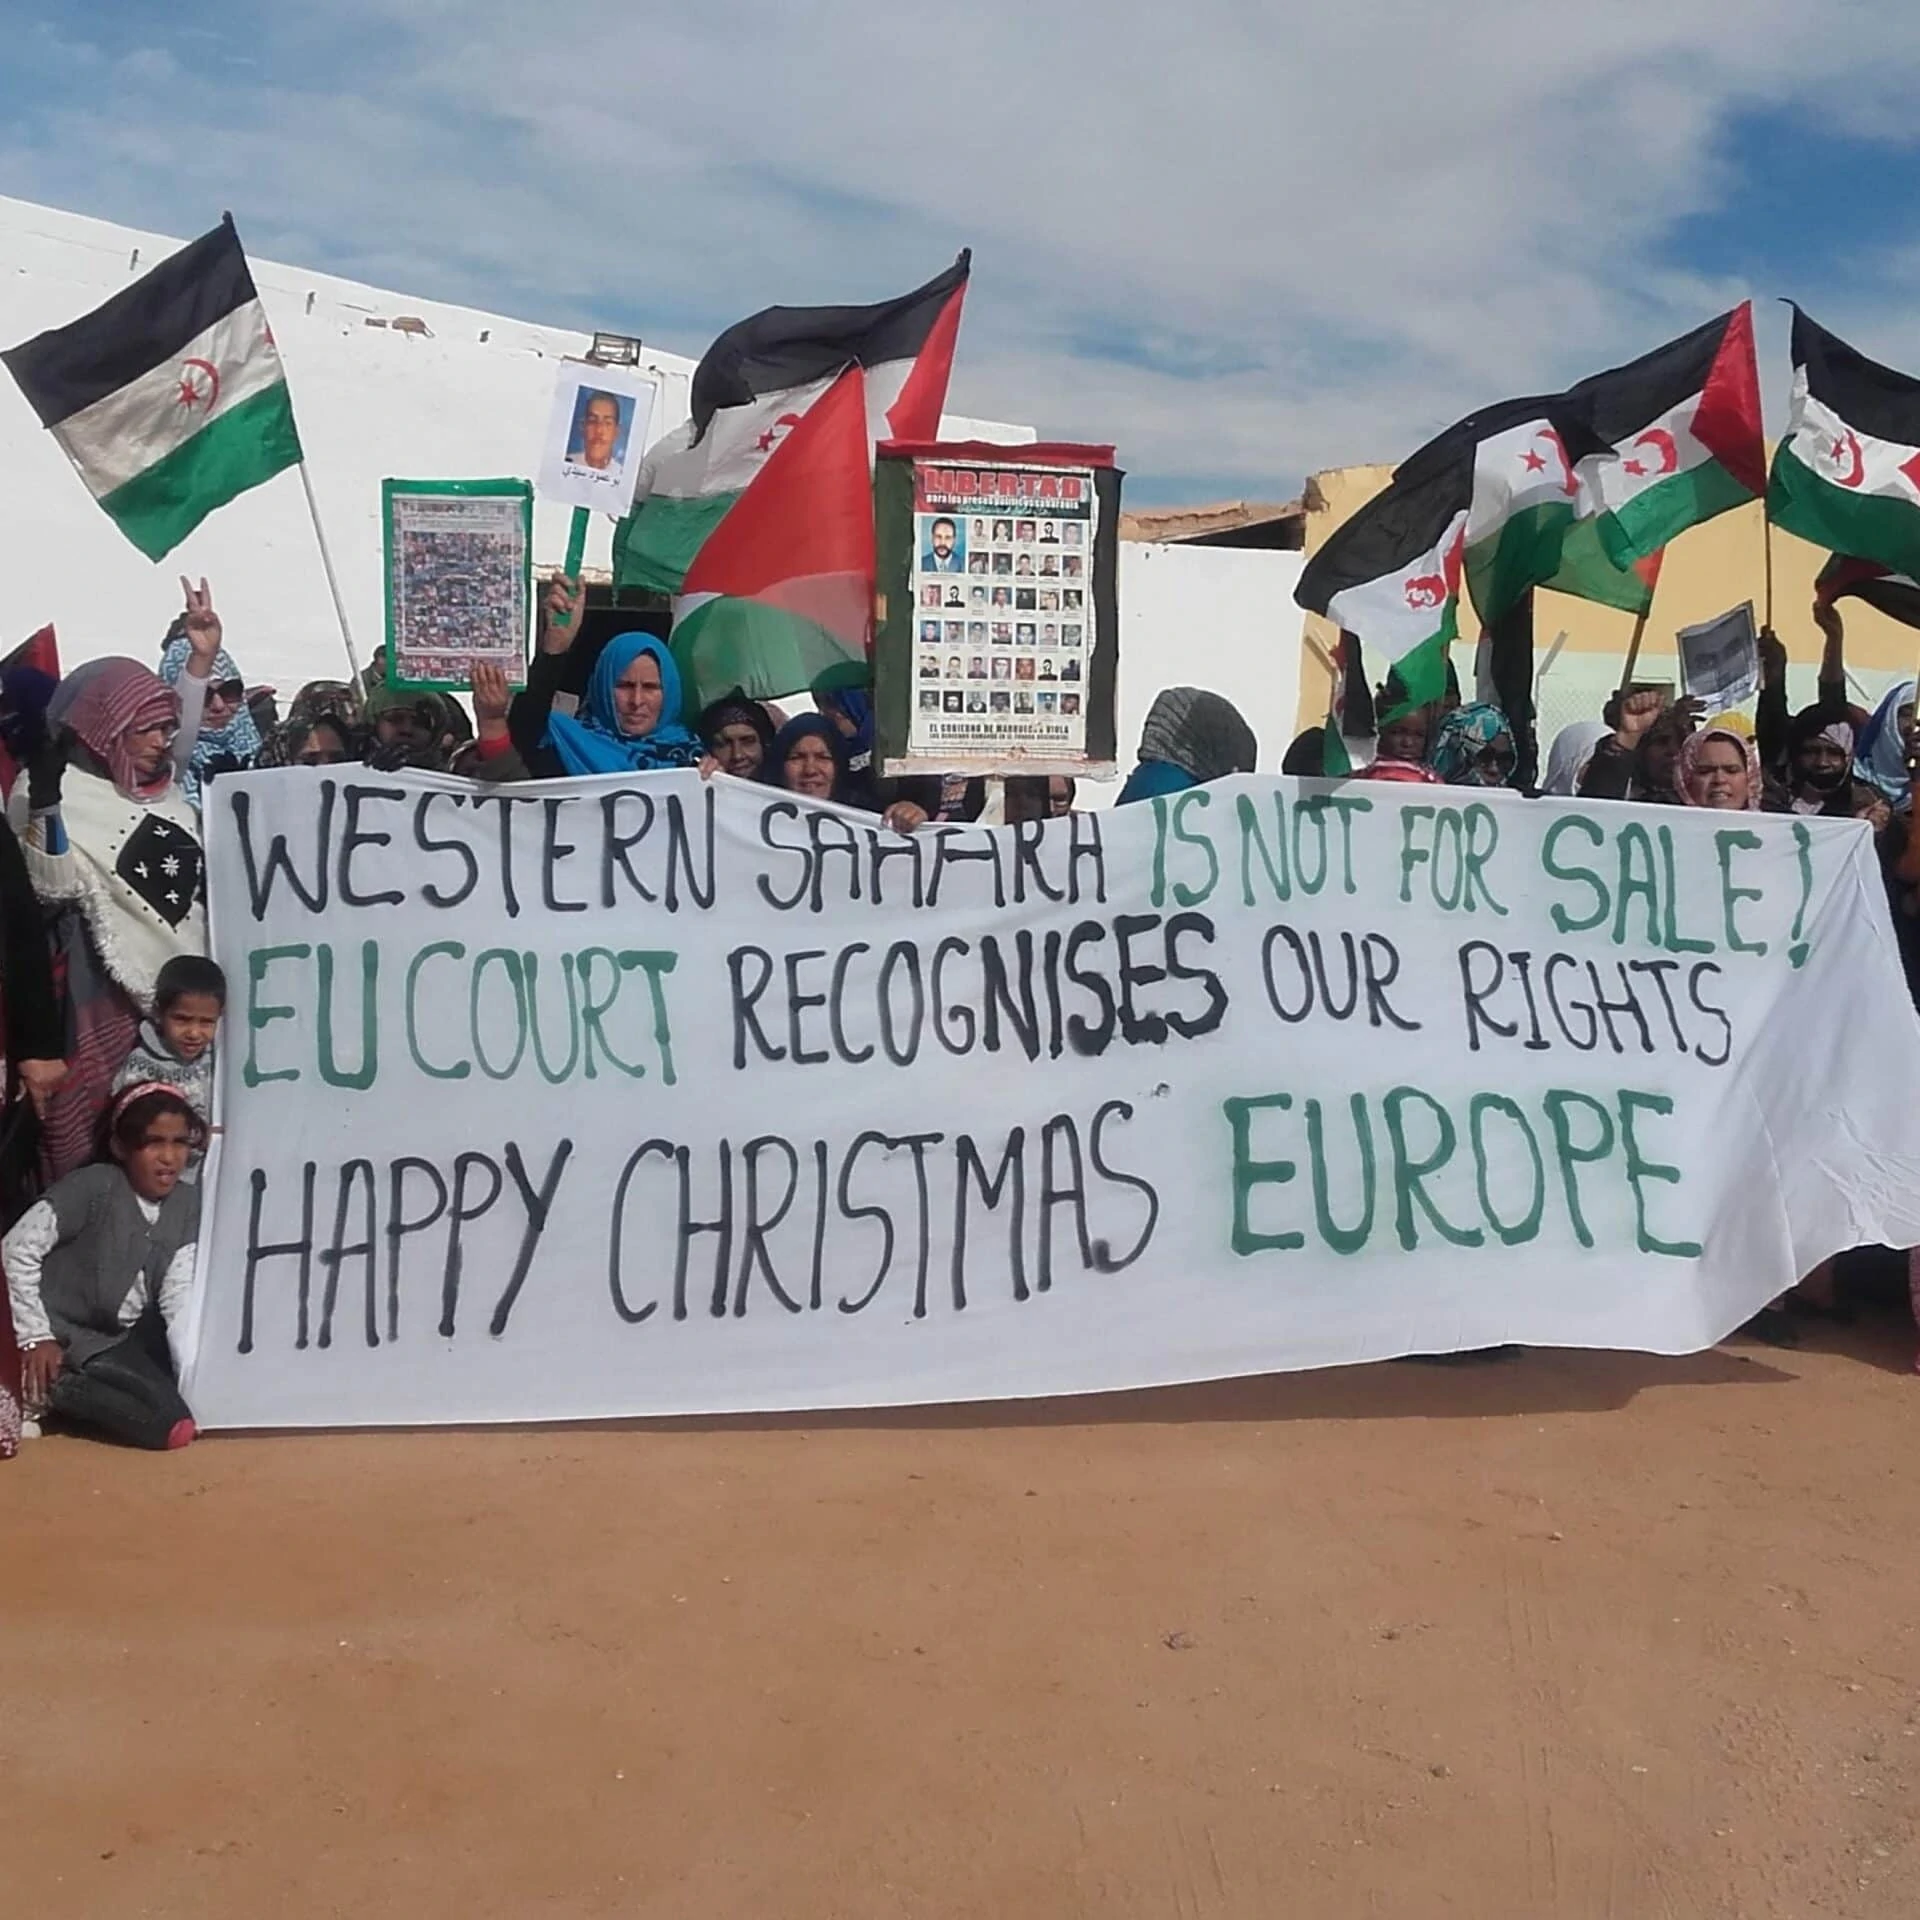 Es stehen eine Menge von Sahraouis in der Wüste im Halbkreis. Einige halten ein Transparent: Die Westsahara steht nicht zum Verkauf. Das EU-Gericht anerkennt unsere Rechte. Fröhliche Weihnachten Europa.